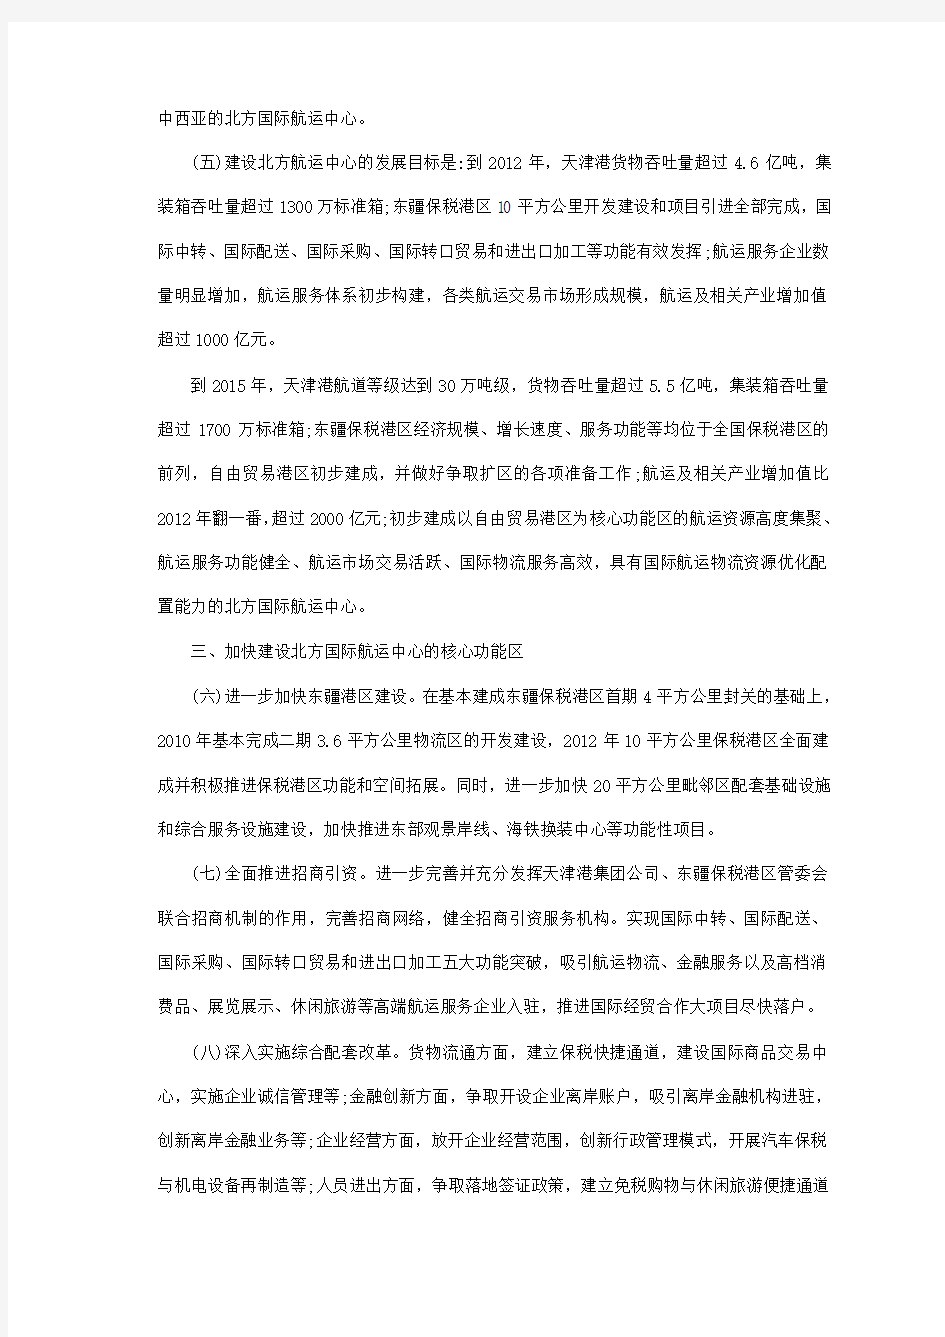 20100118 天津滨海新区关于加快北方国际航运中心建设的若干意见(试行)